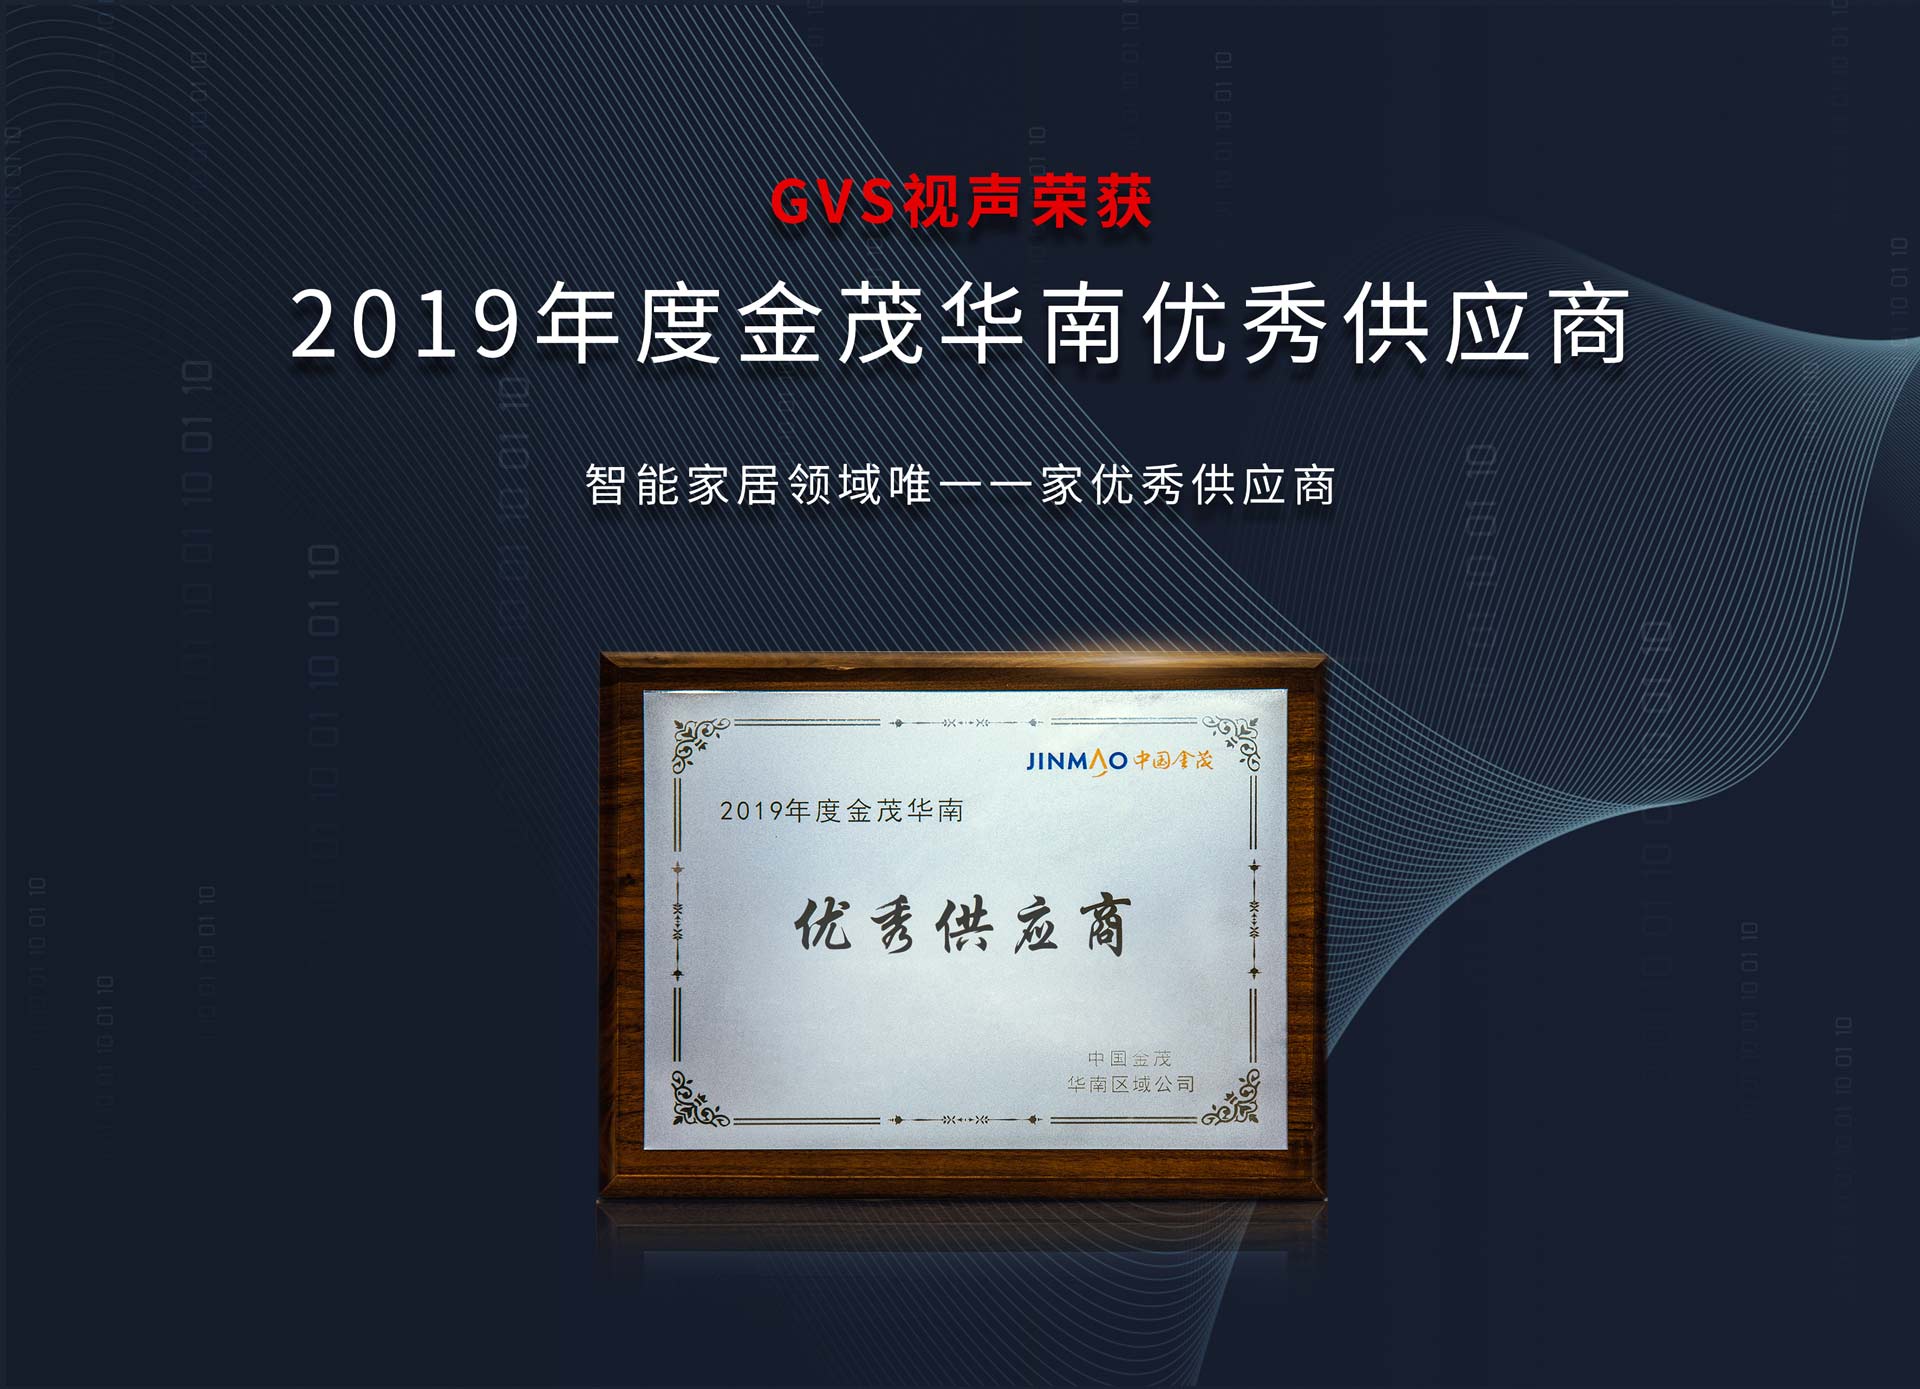 2019年度中国金茂华南“优秀供应商”奖项